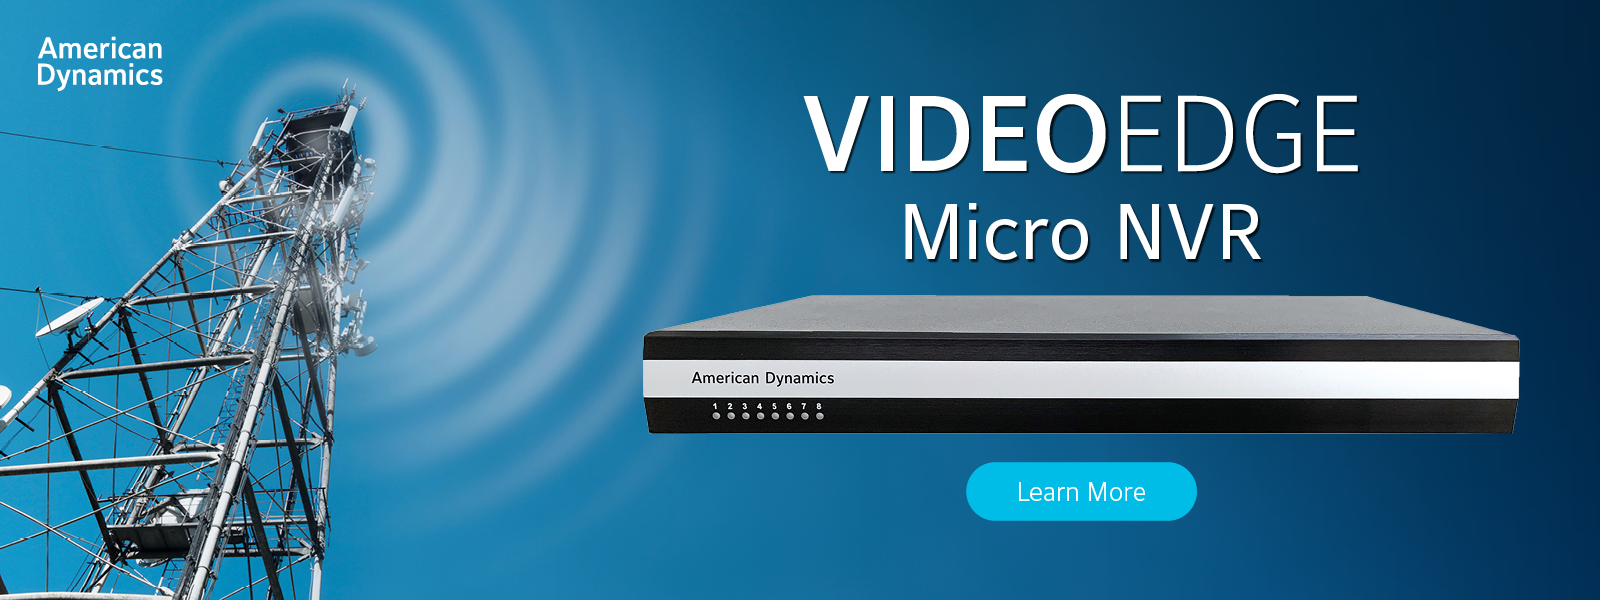 VideoEdge Micro